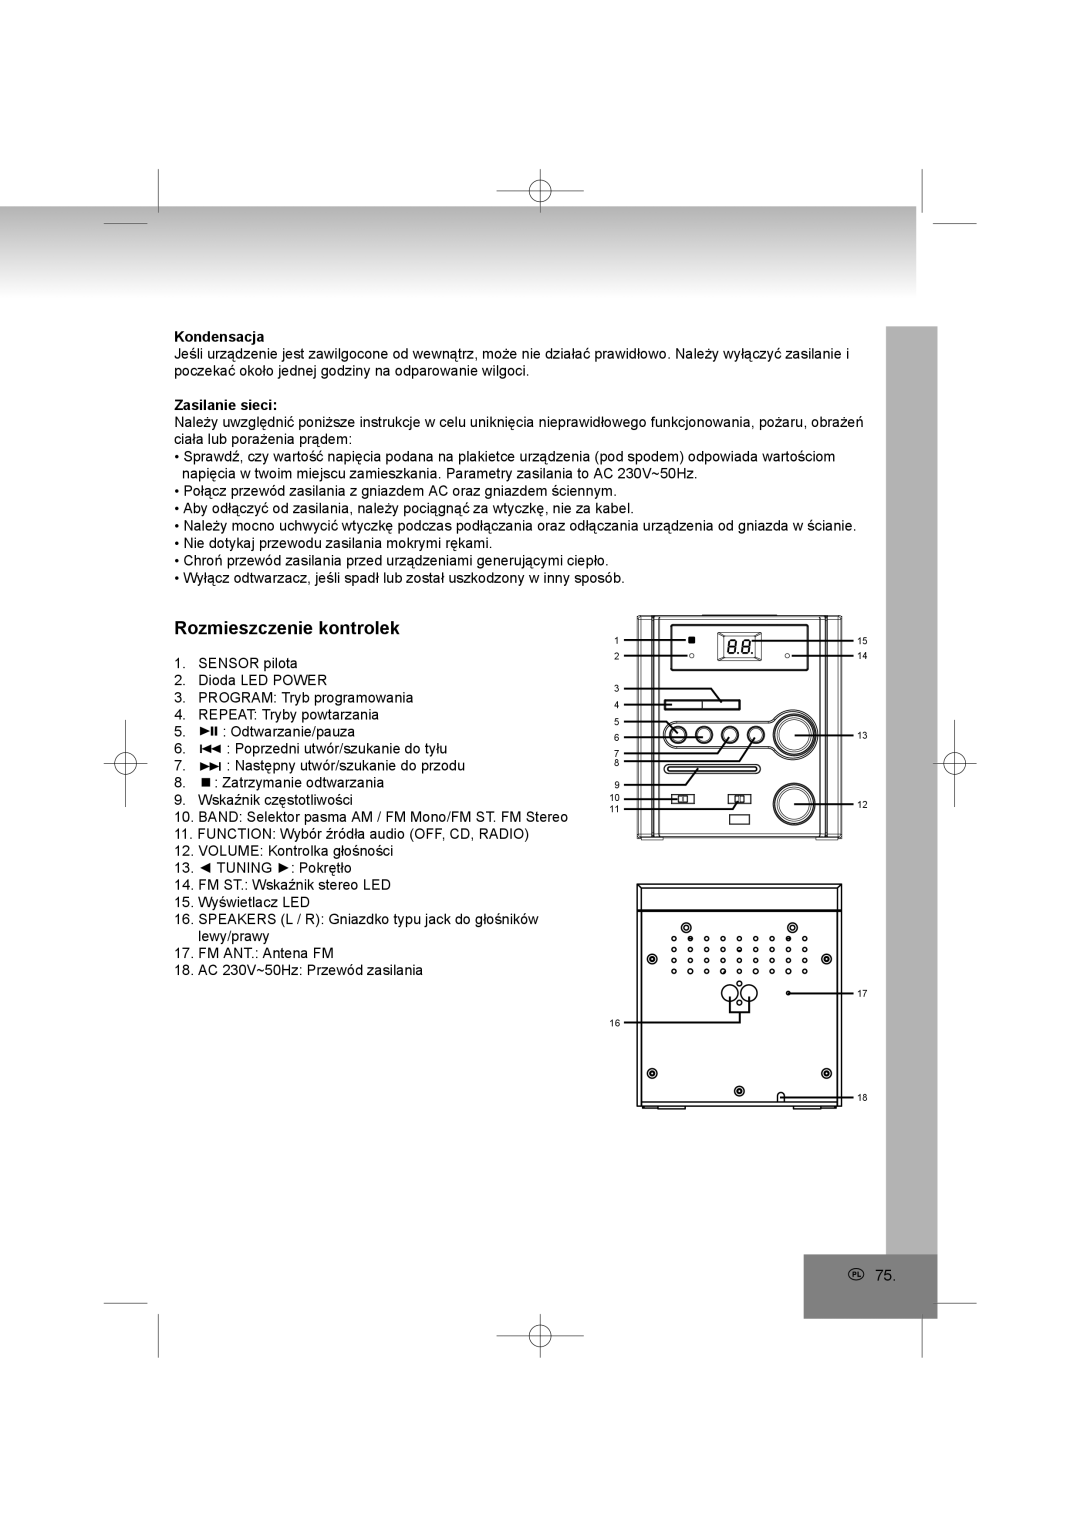 Elta 2402N manual Rozmieszczenie kontrolek, Kondensacja, Zasilanie sieci 